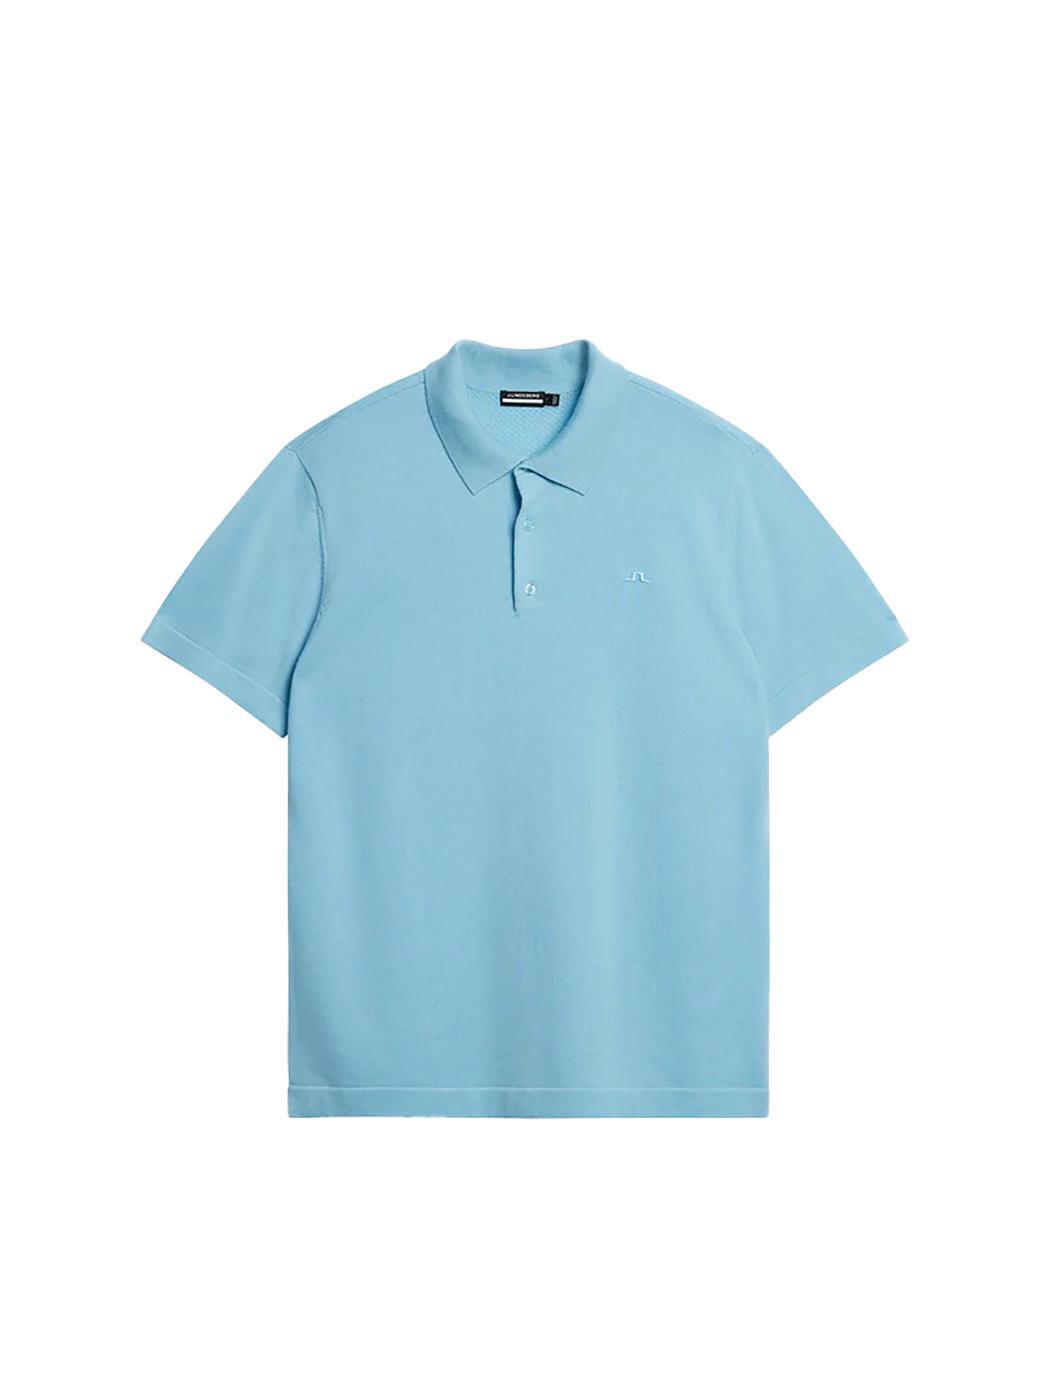 제이린드버그 SS24 남성 리어 골프 니트 셔츠 발트해 하늘색 GMKW09635-O493